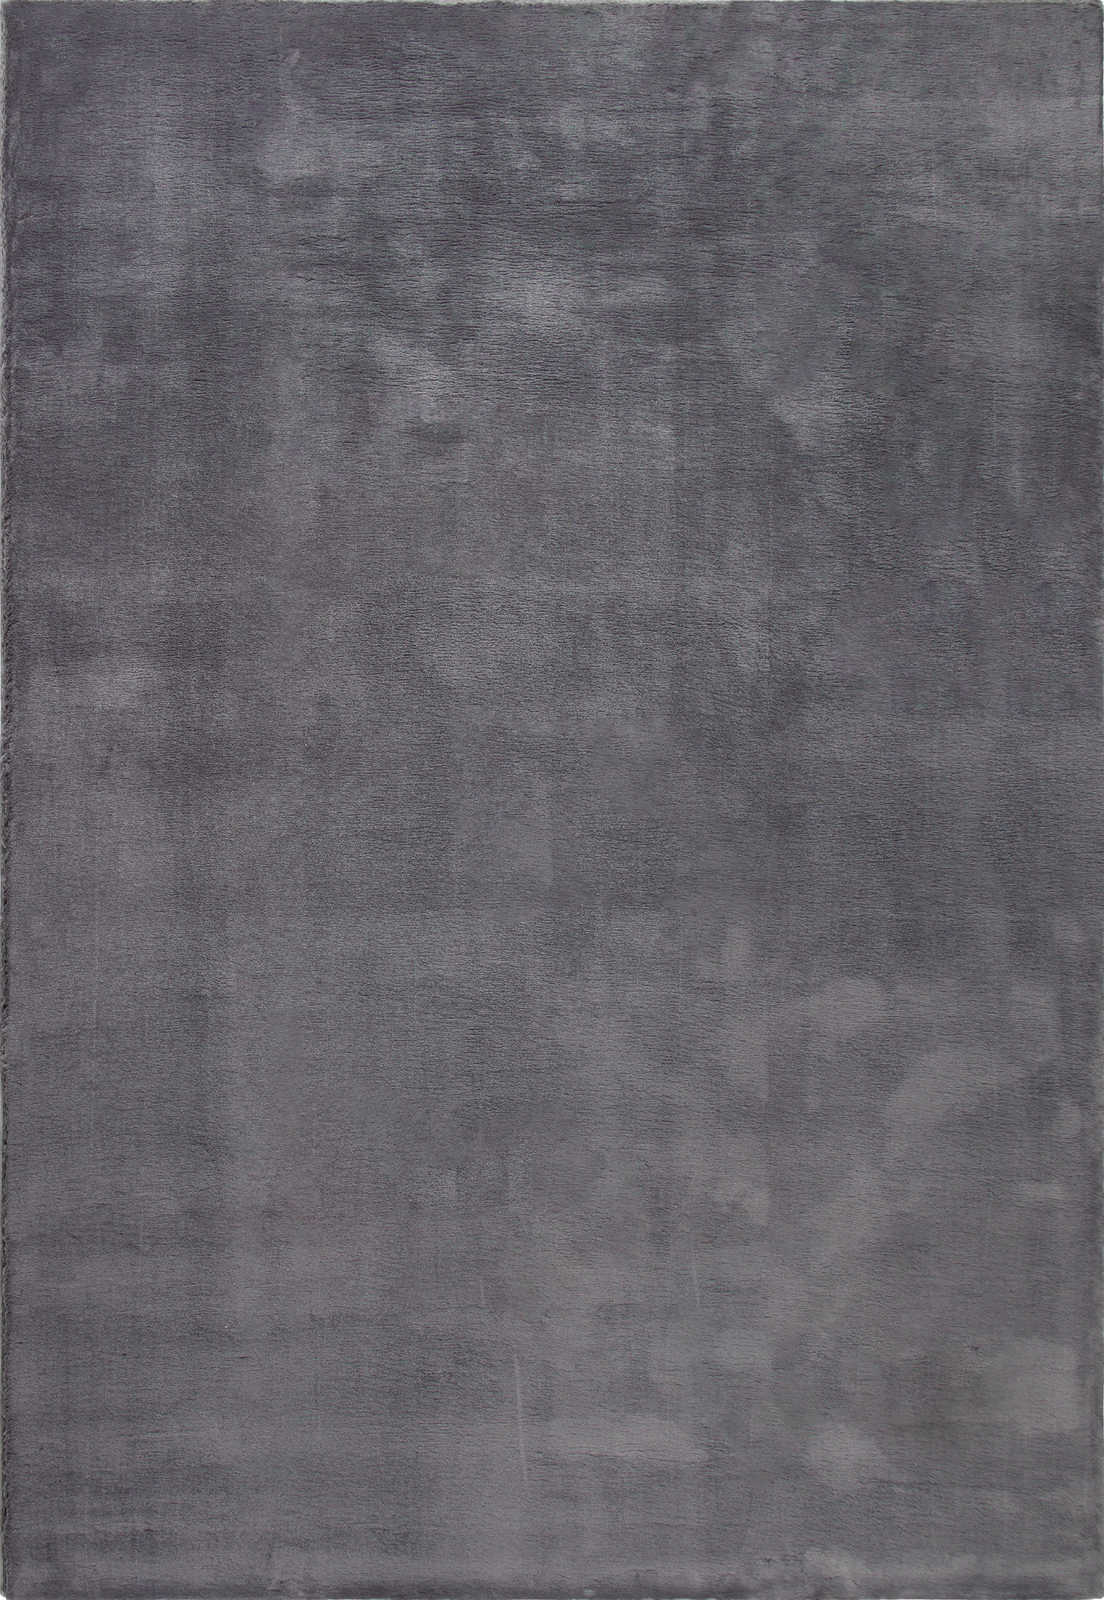             Modern hoogpolig tapijt in antraciet - 200 x 140 cm
        